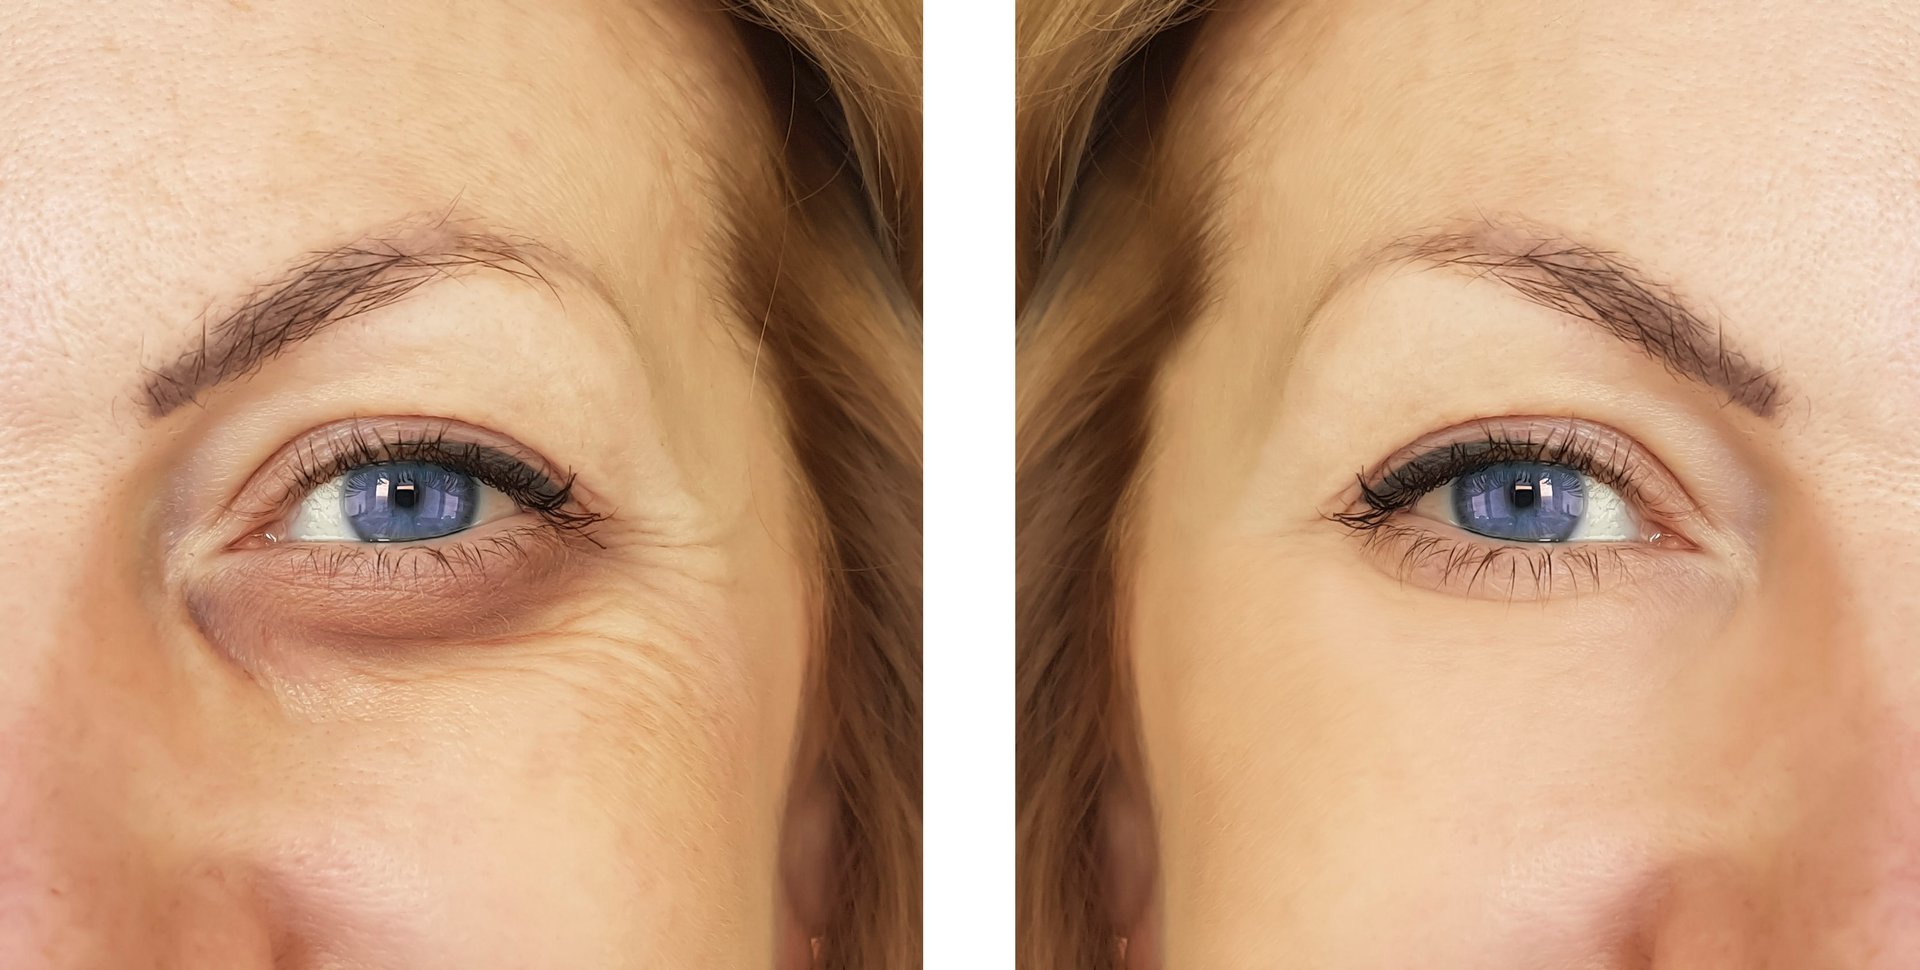 Vorher-Nachher-Vergleich: Augenpartie mit glatterer Haut